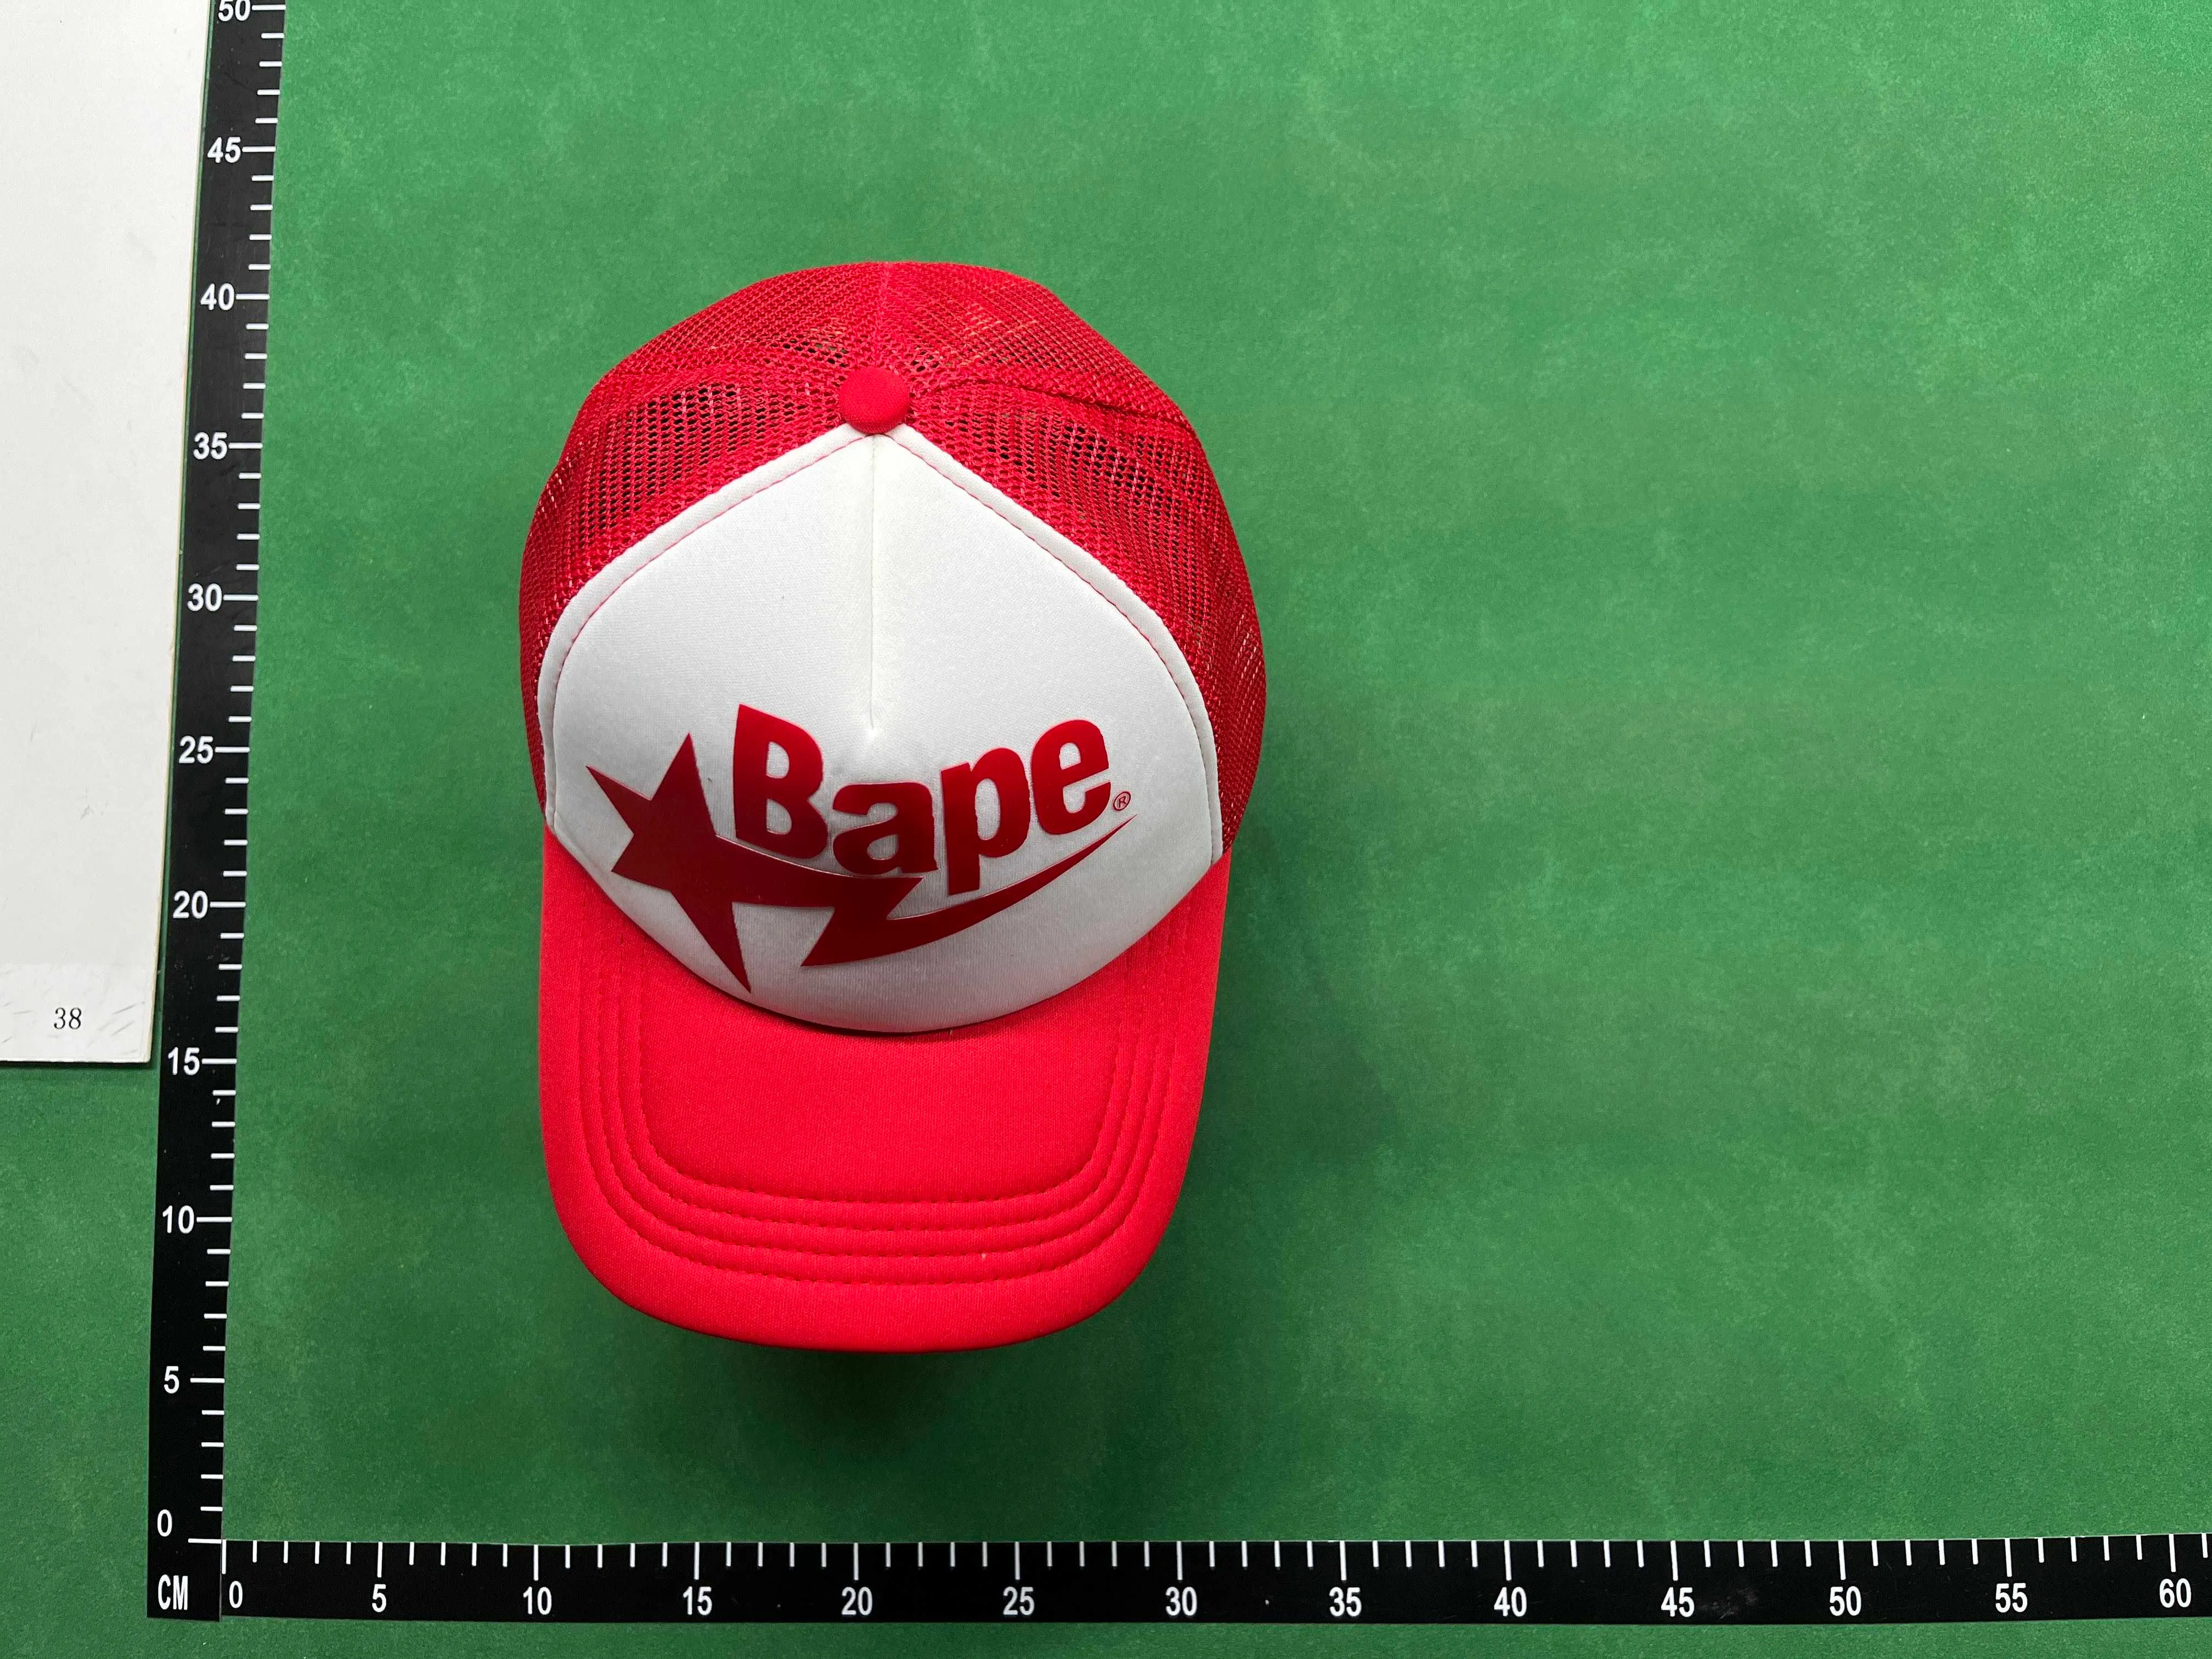 Bape hats